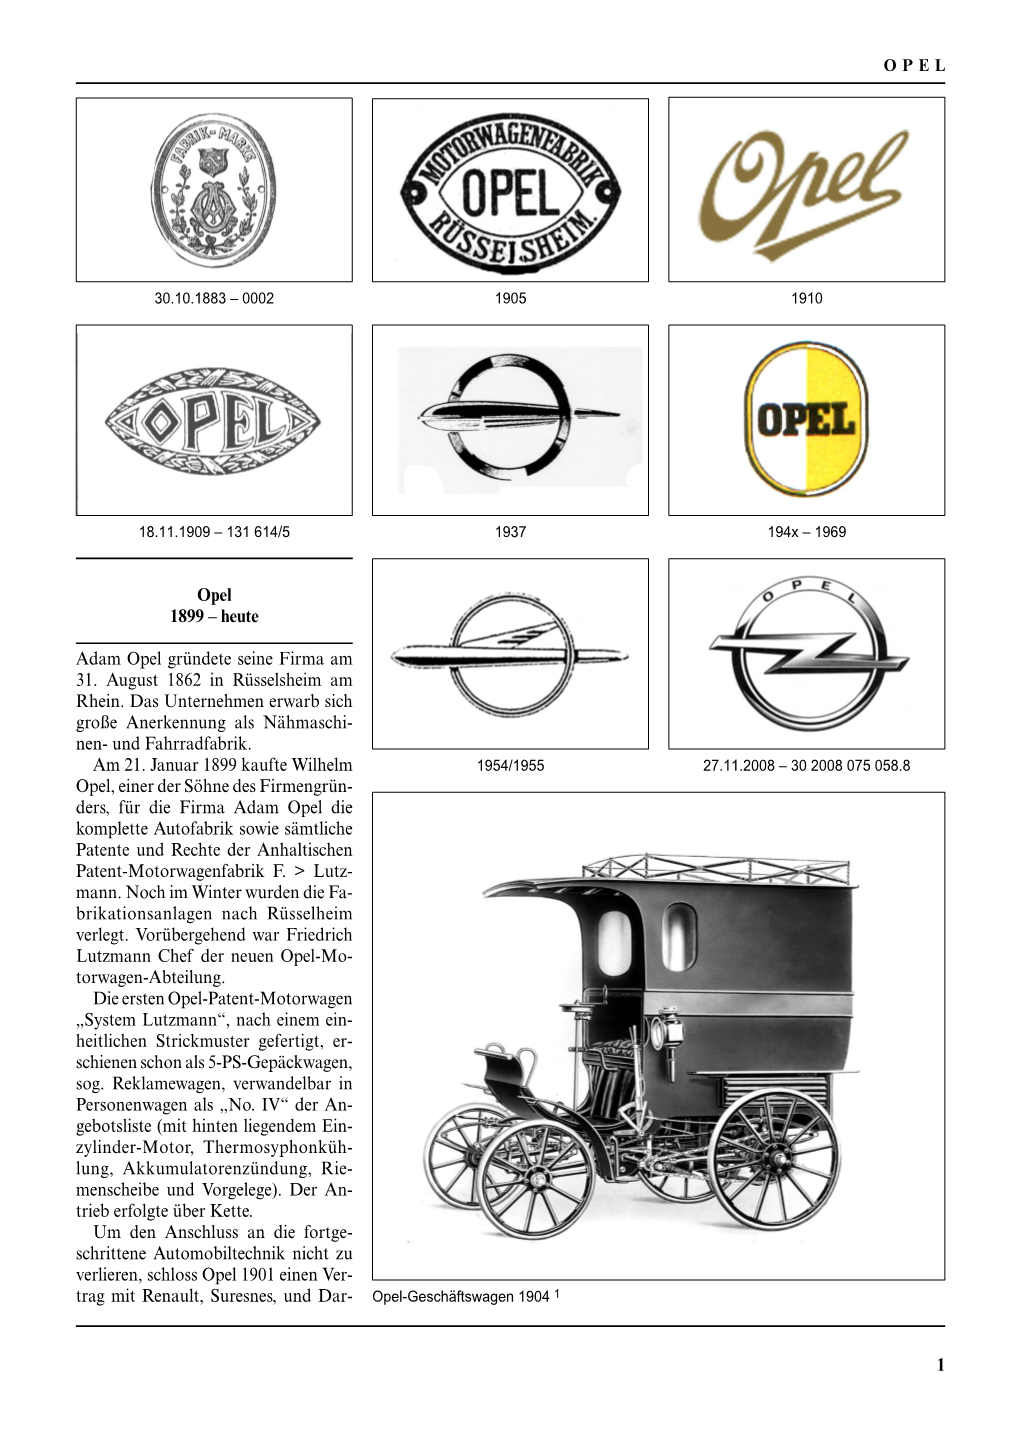 Heute Adam Opel Gründete Seine Firma Am 31. August 1862 In